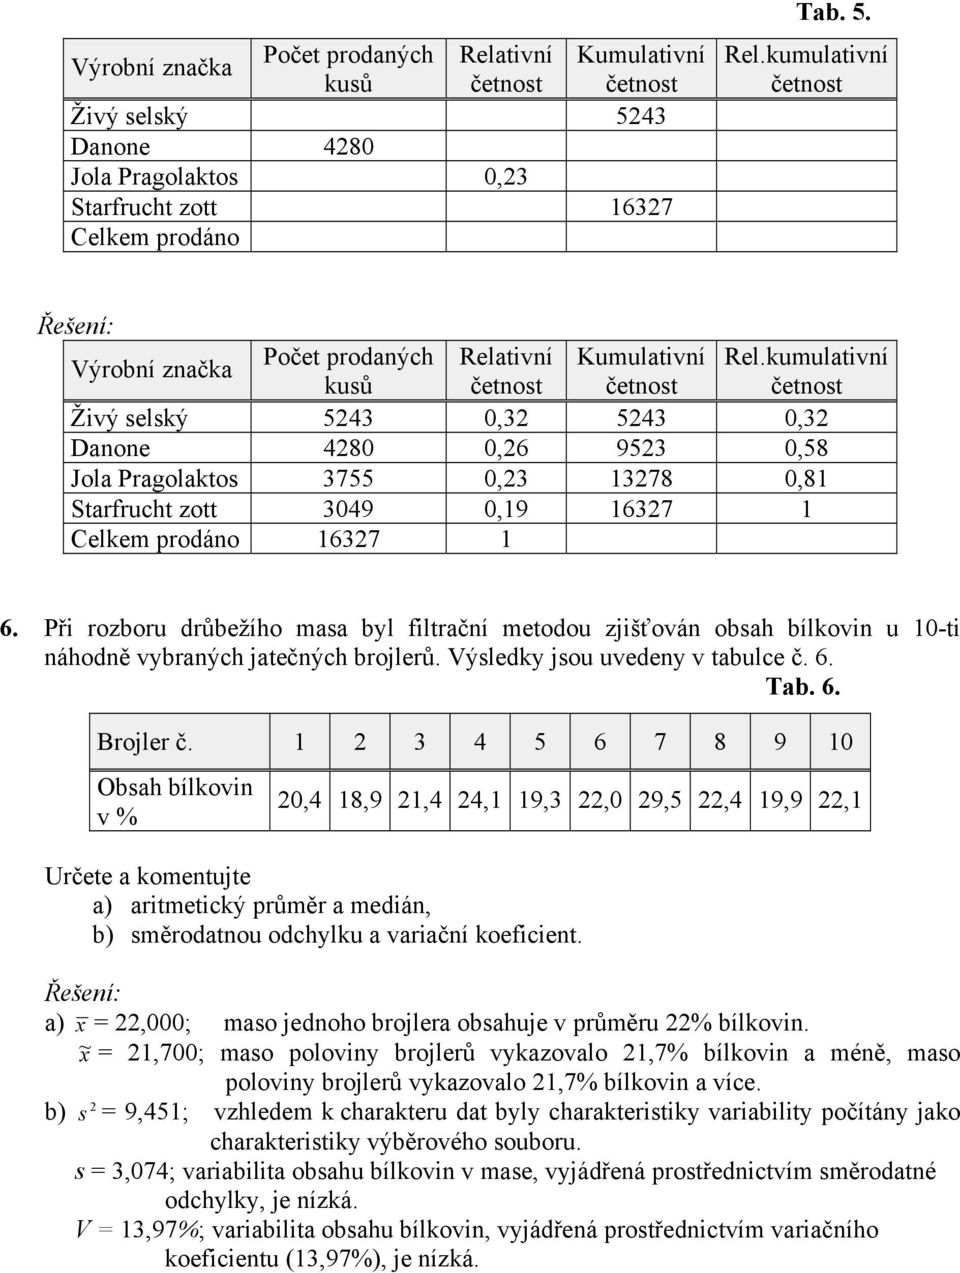 Při rozboru drůbežího masa byl filtrační metodou zjišťován obsah bílkovin u 10-ti náhodně vybraných jatečných brojlerů. Výsledky jsou uvedeny v tabulce č. 6. Tab. 6. Brojler č.